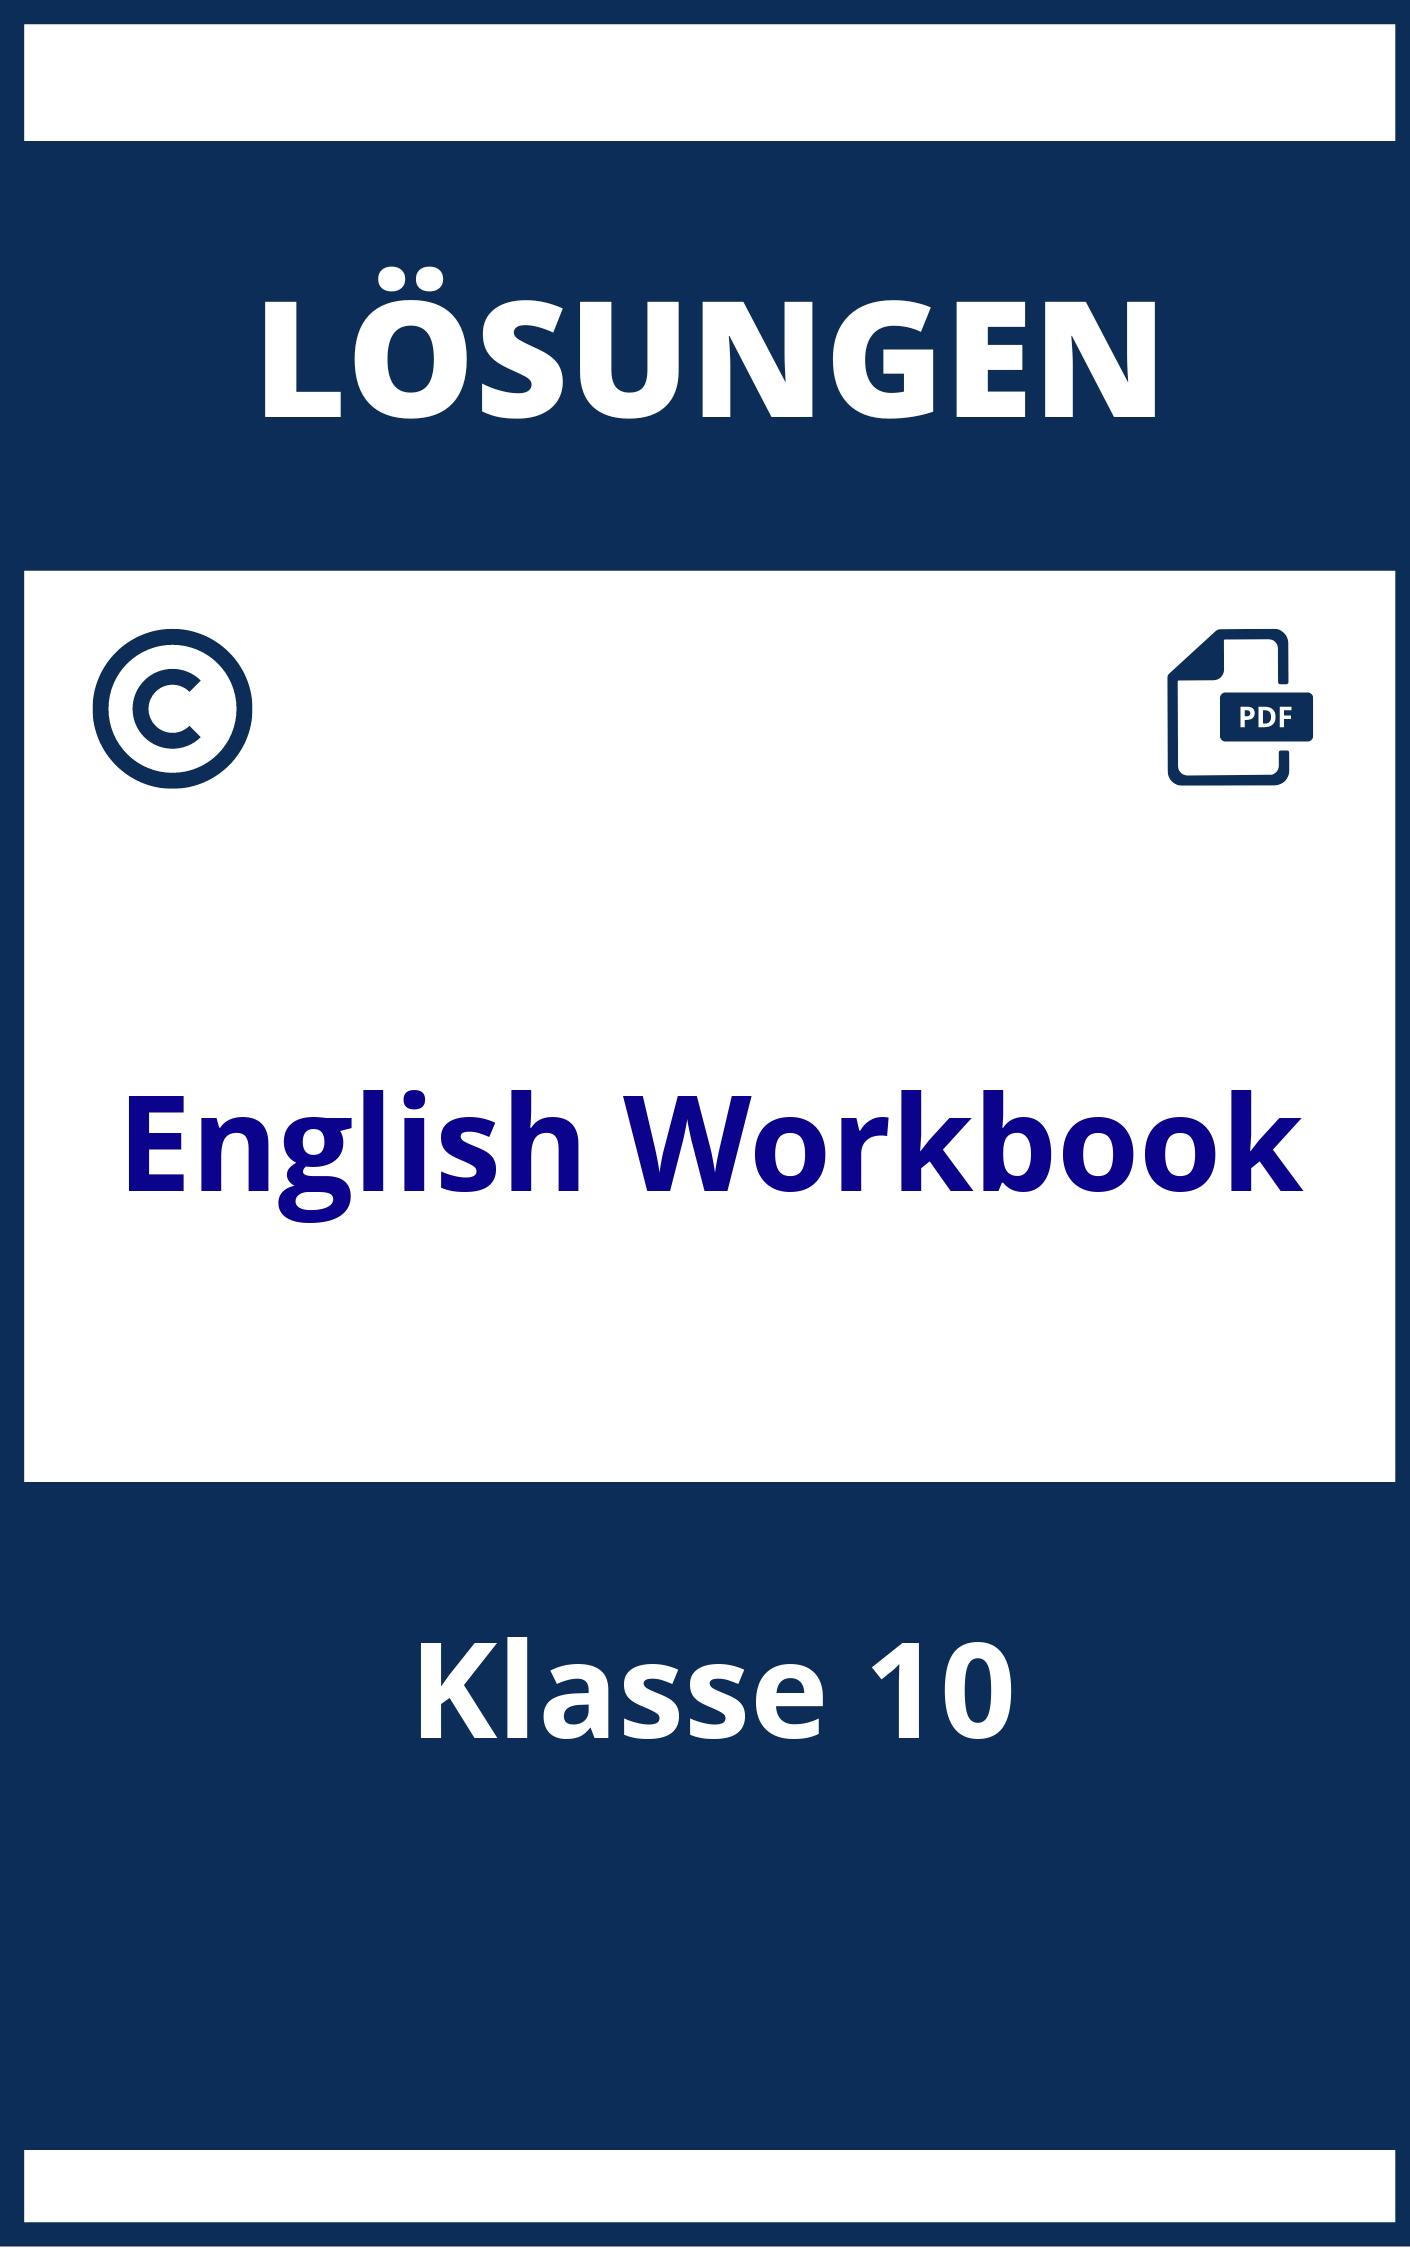 English Workbook Lösungen Klasse 10